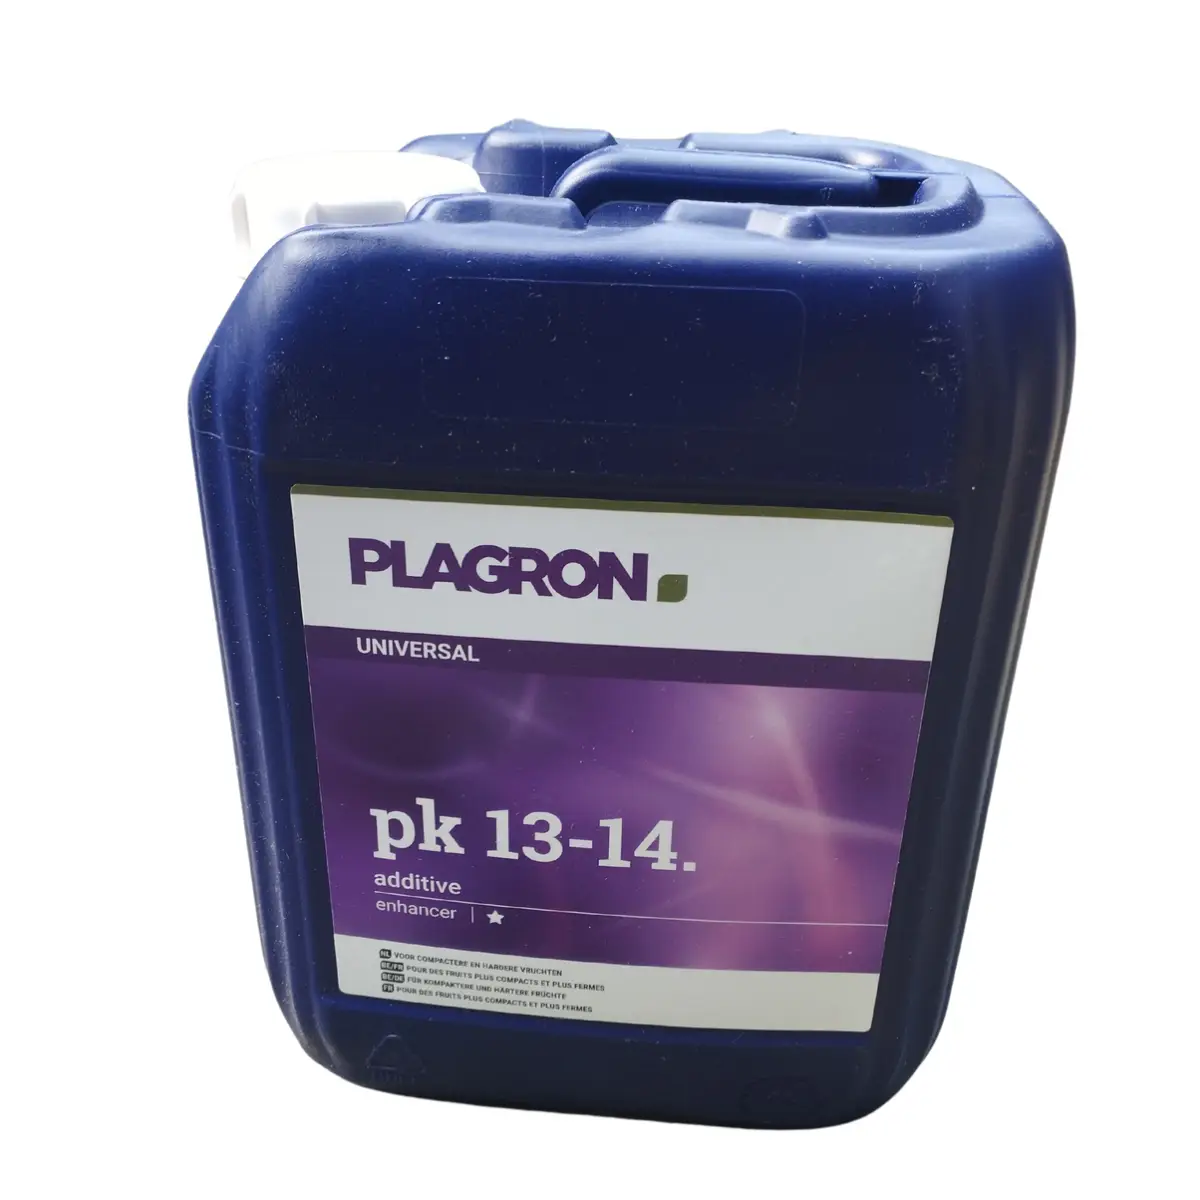 booster de floraison pk 13-14 de Plagron 5 litres